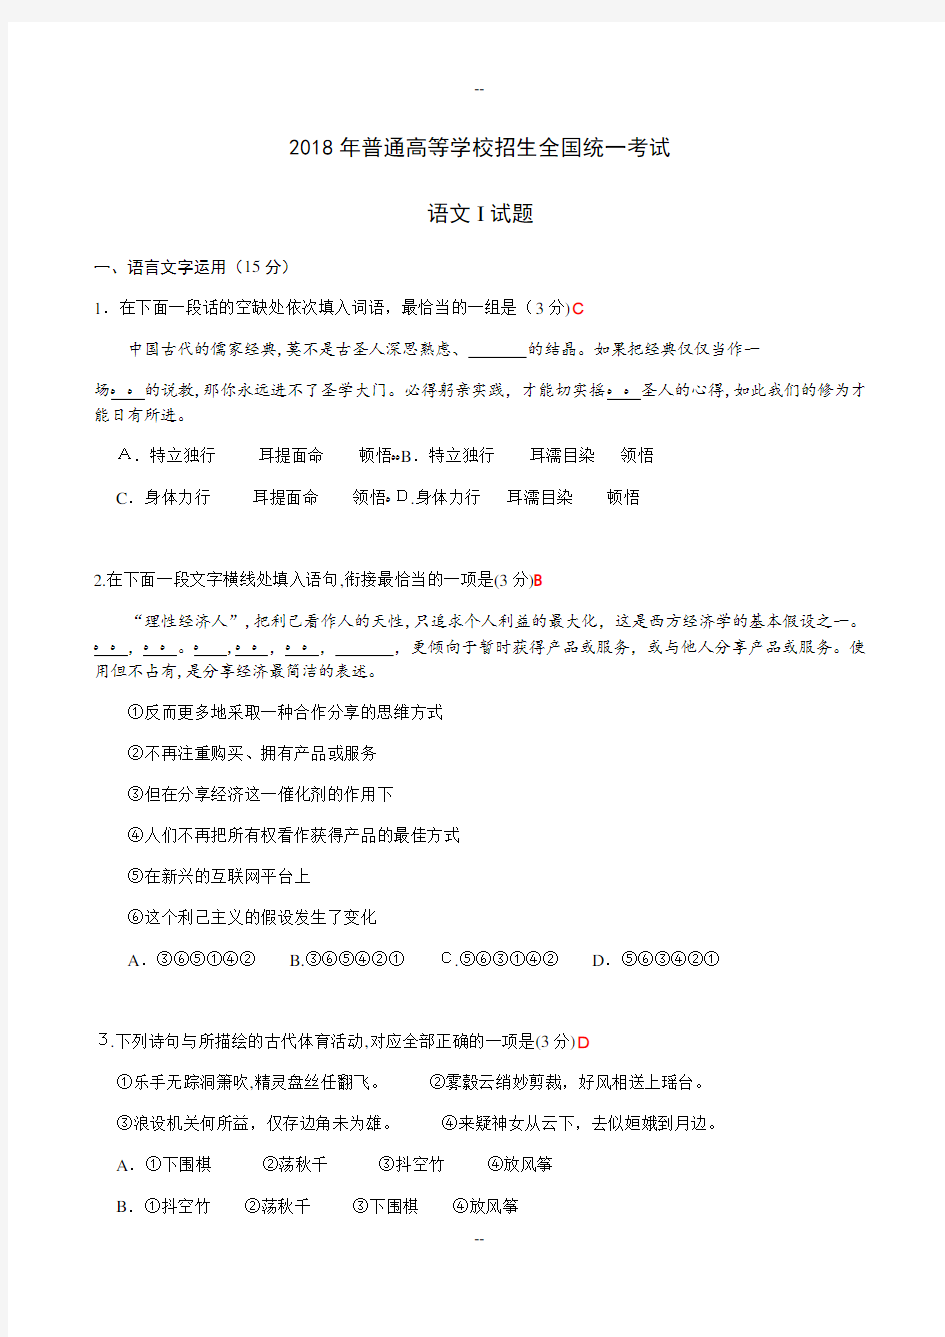 江苏语文高考卷含附加题答案版